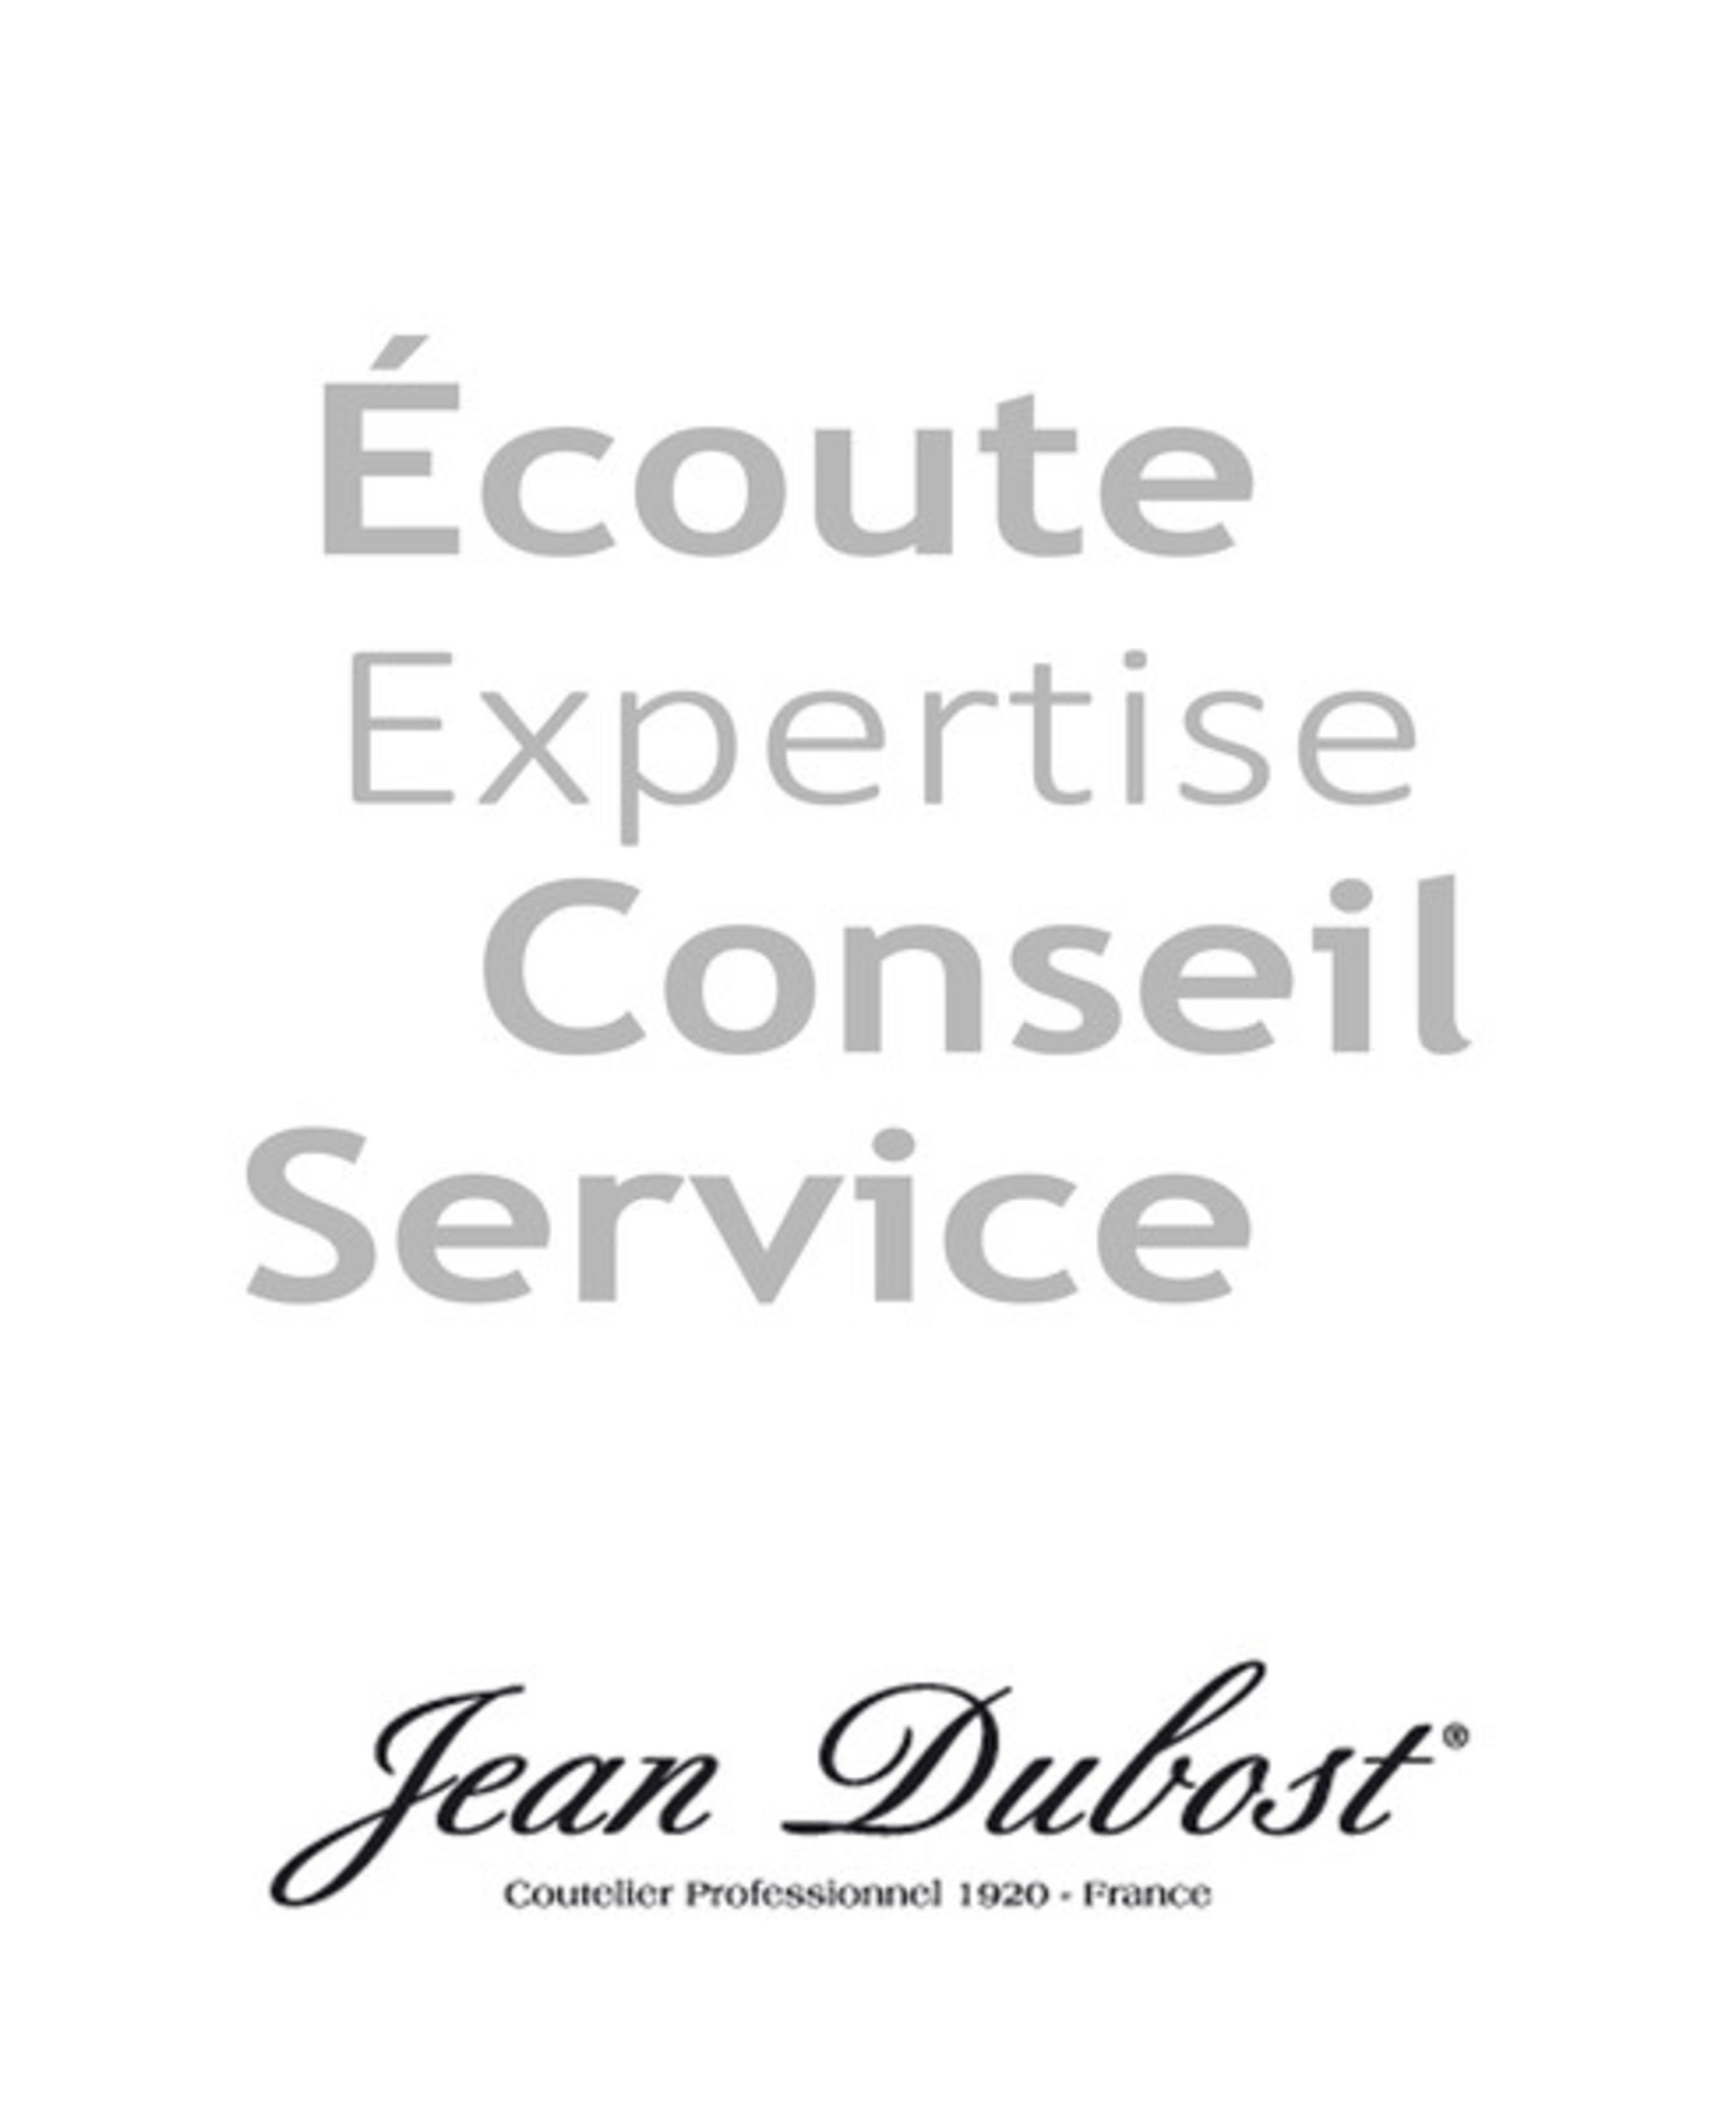 La grille céramique Jean Dubost